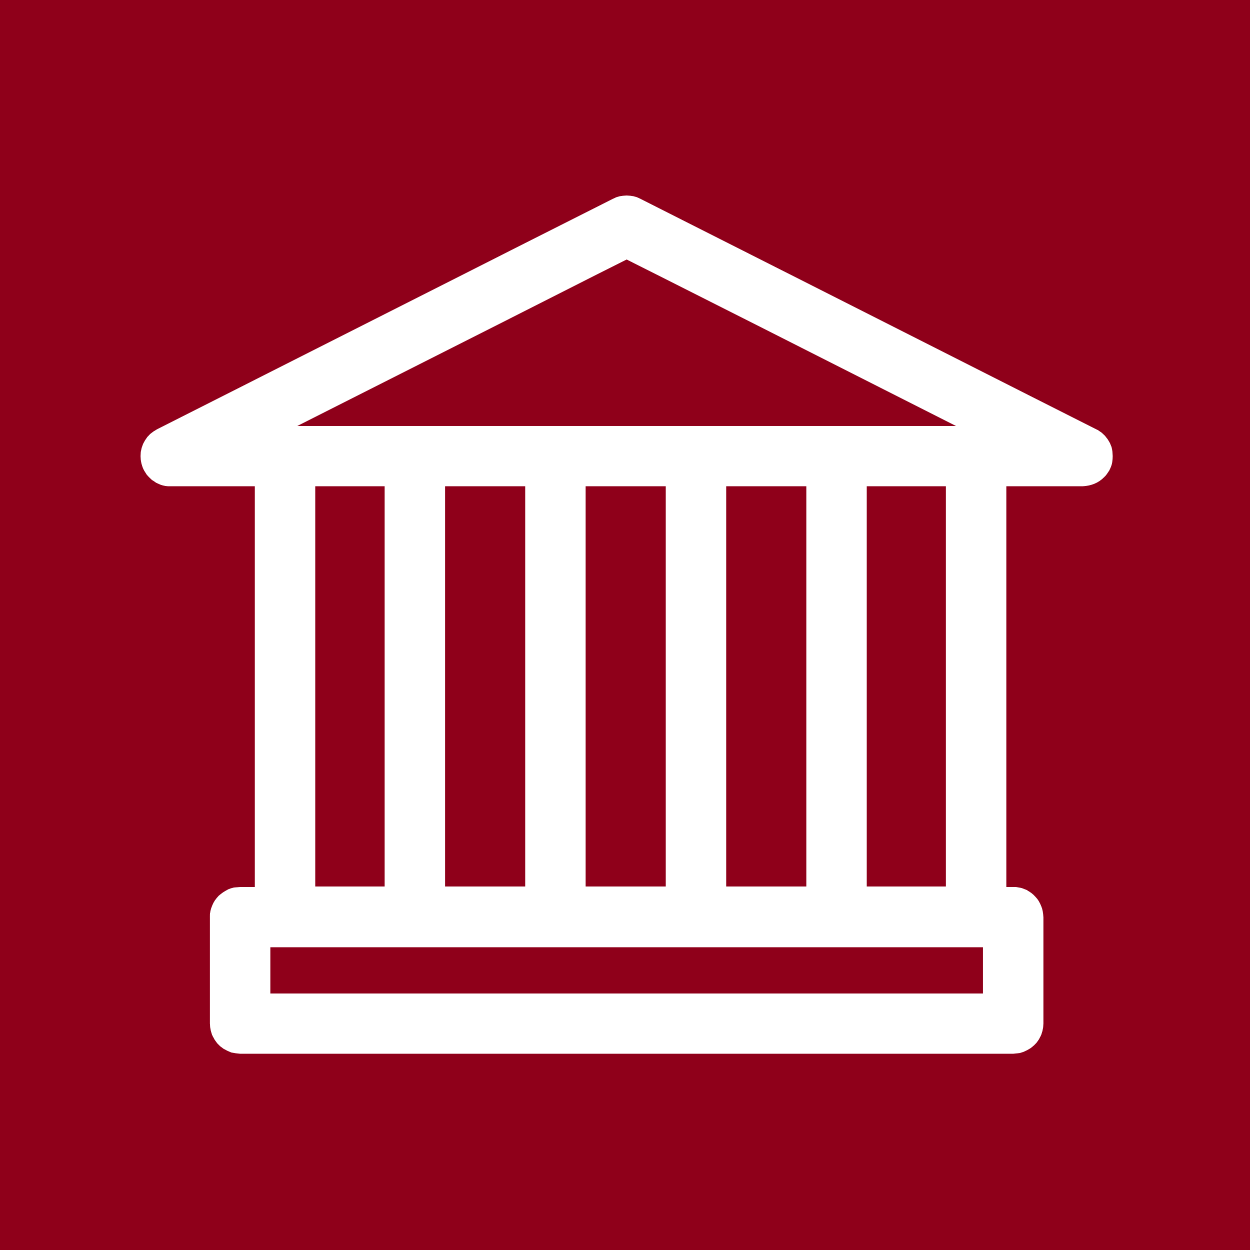 Le logo du Pavillon Tabaret représente la gouvernance. 